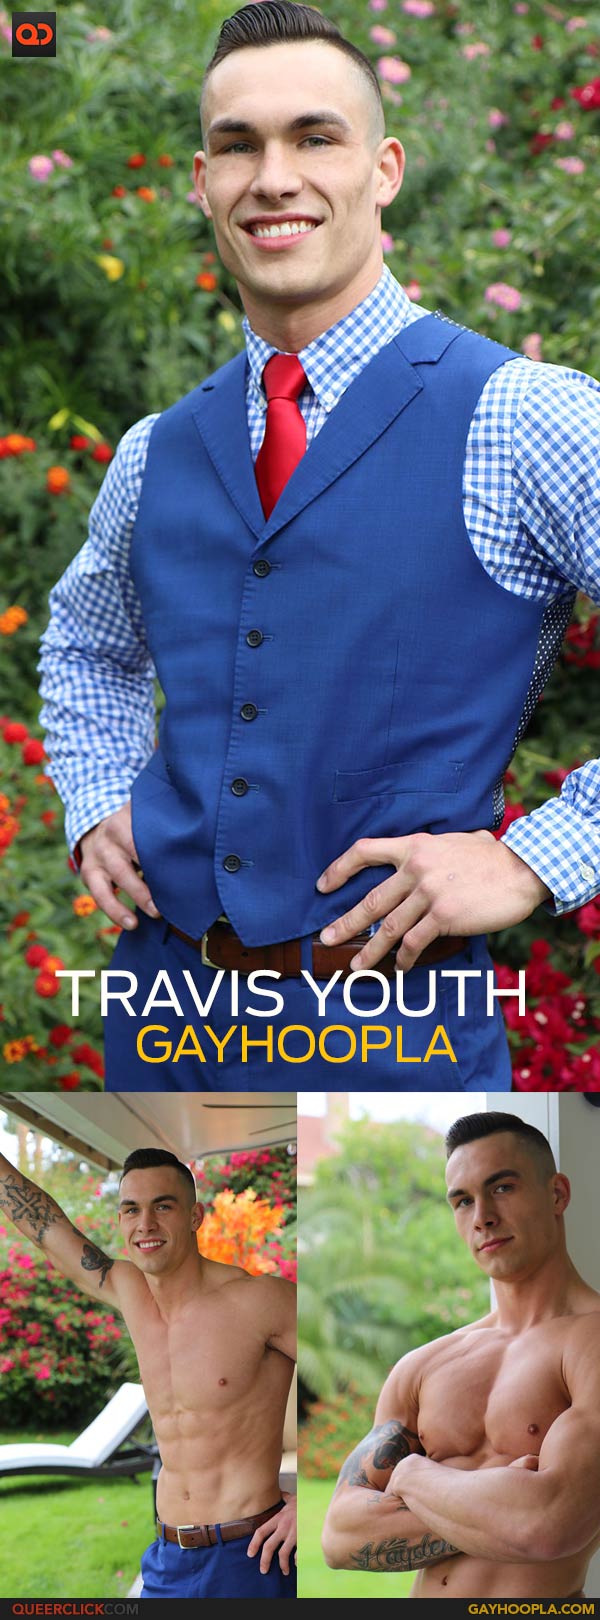 GayHoopla: Travis Youth